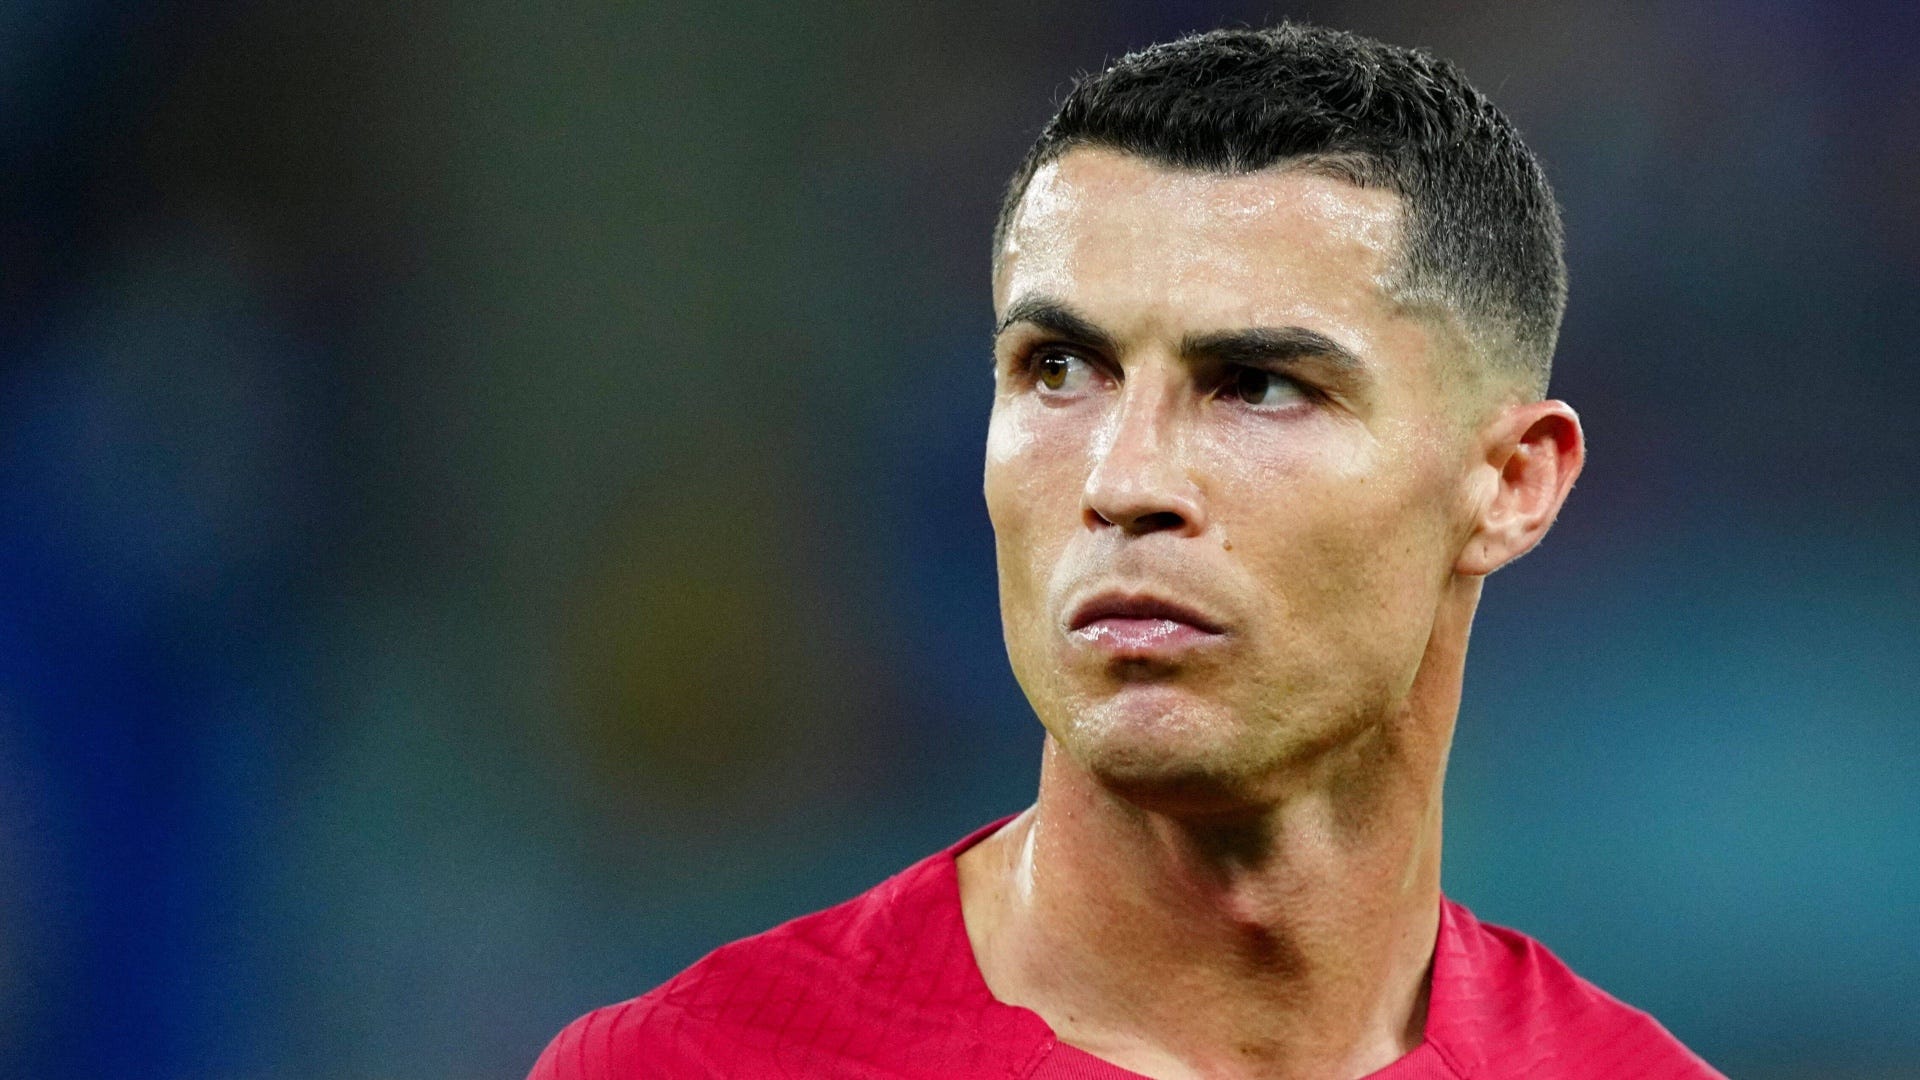 Le Real Madrid ignore Ronaldo pour un autre joueur de Manchester United | Goal.com Français